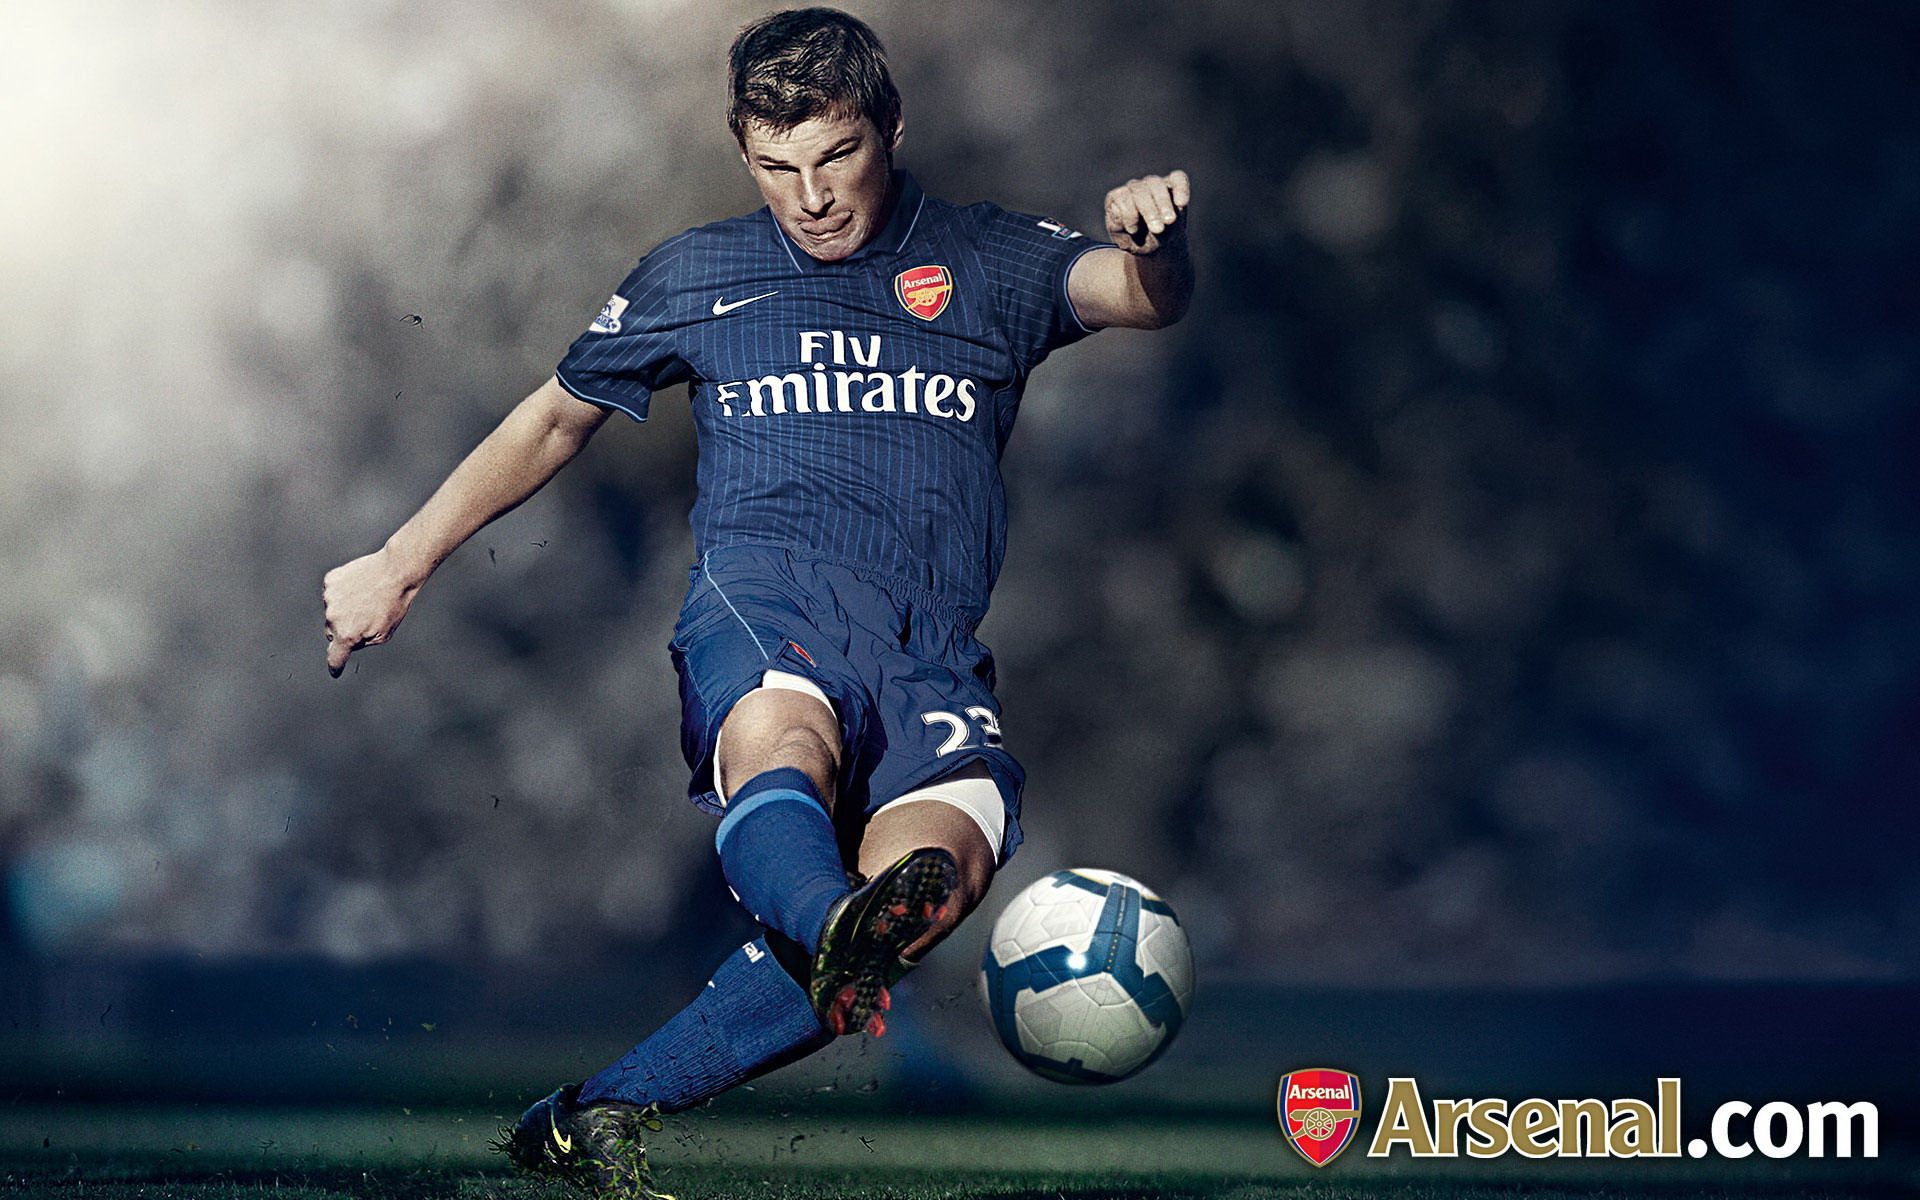 soccer, Arsenal Wallpaper